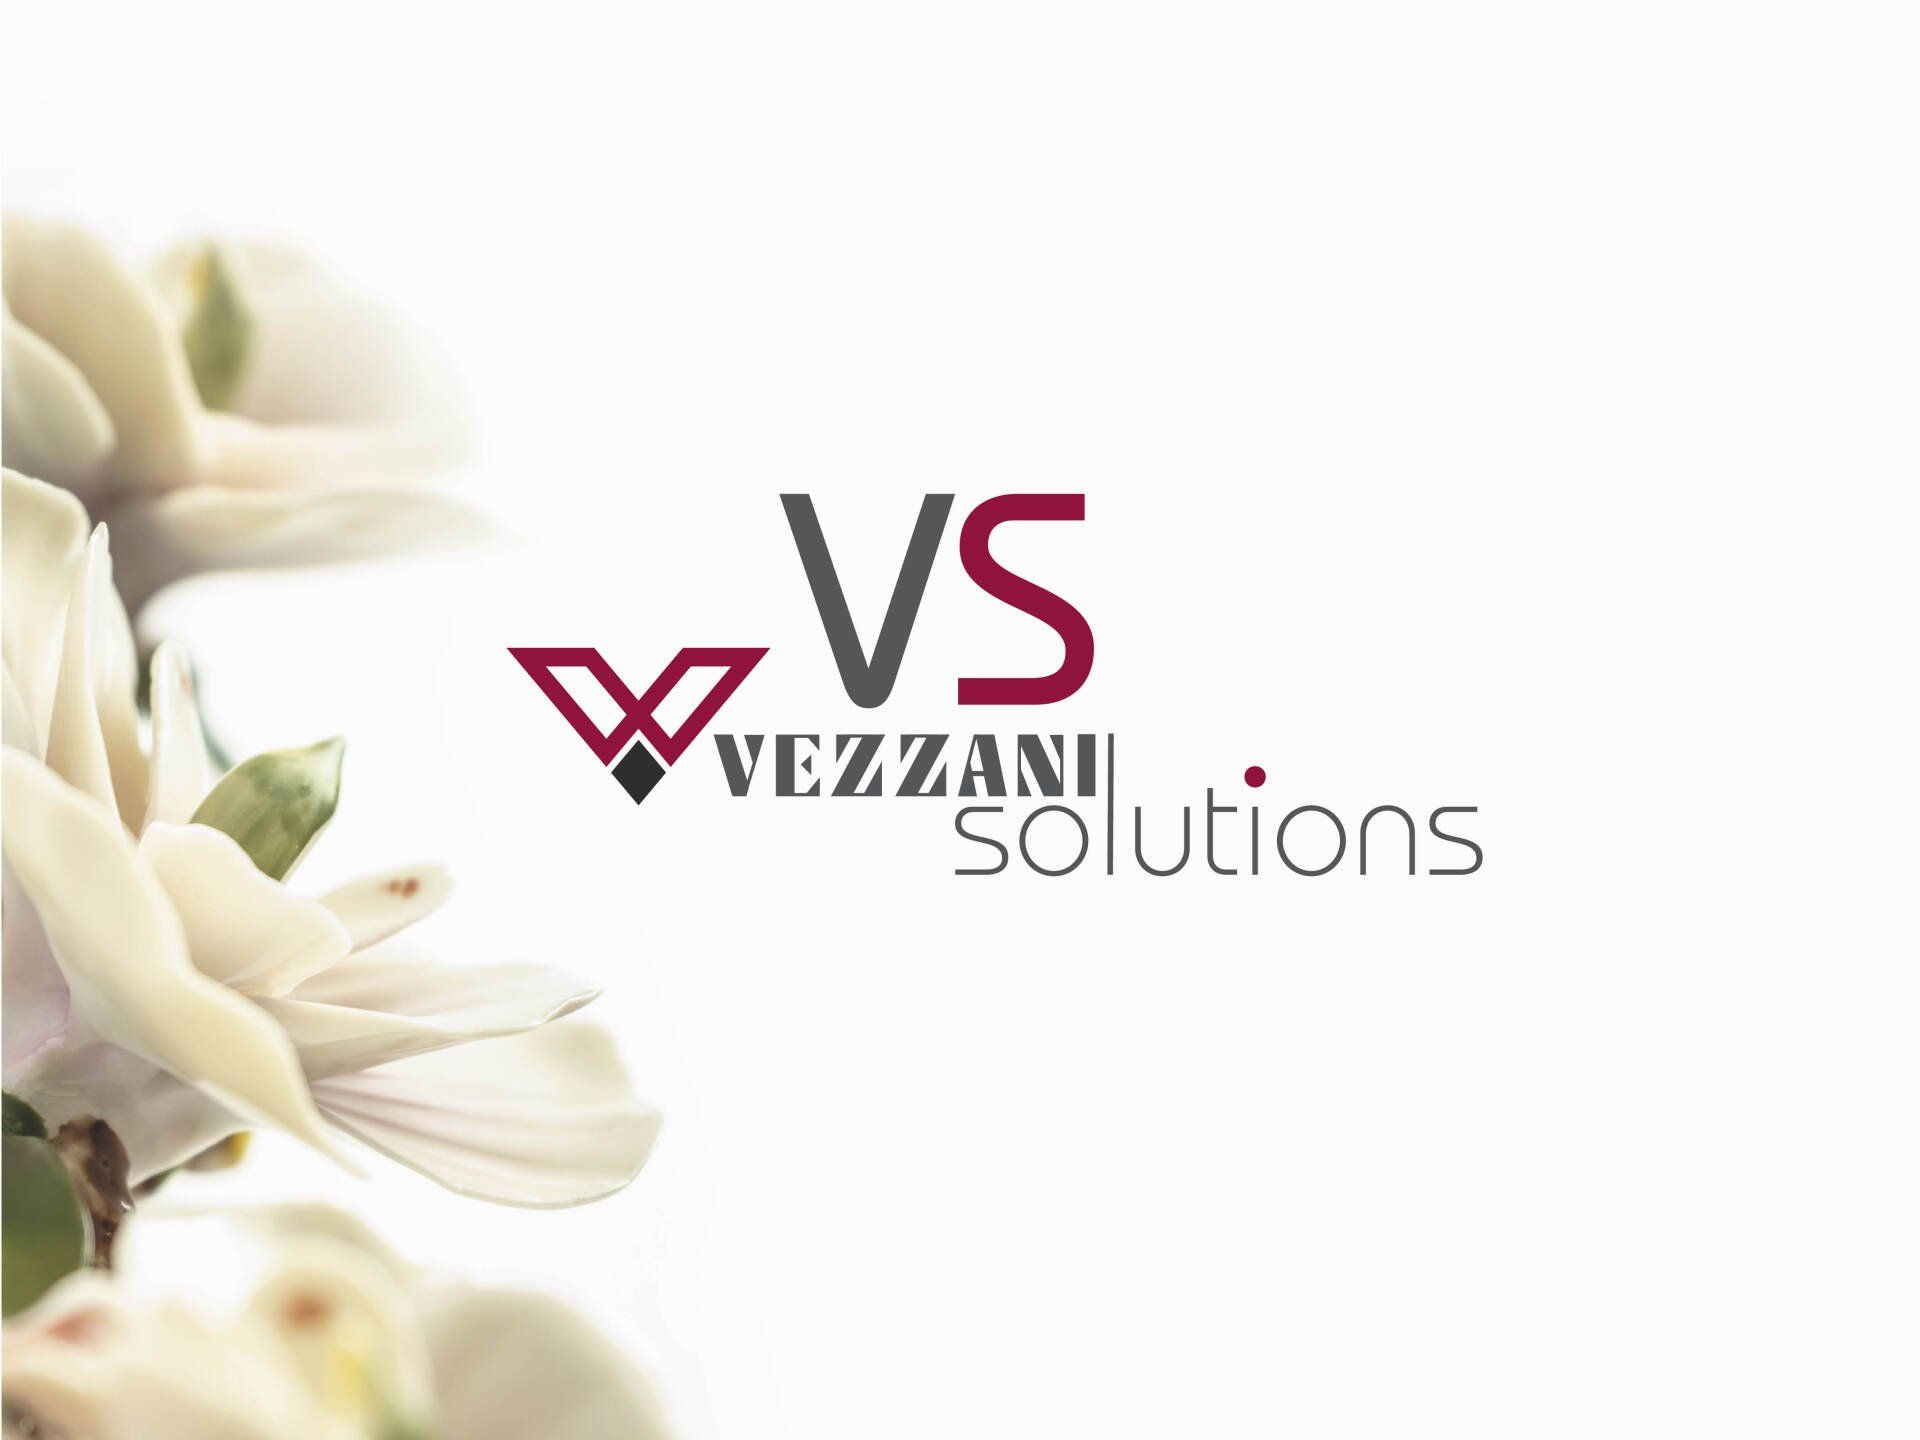 Vezzani solutions configurator